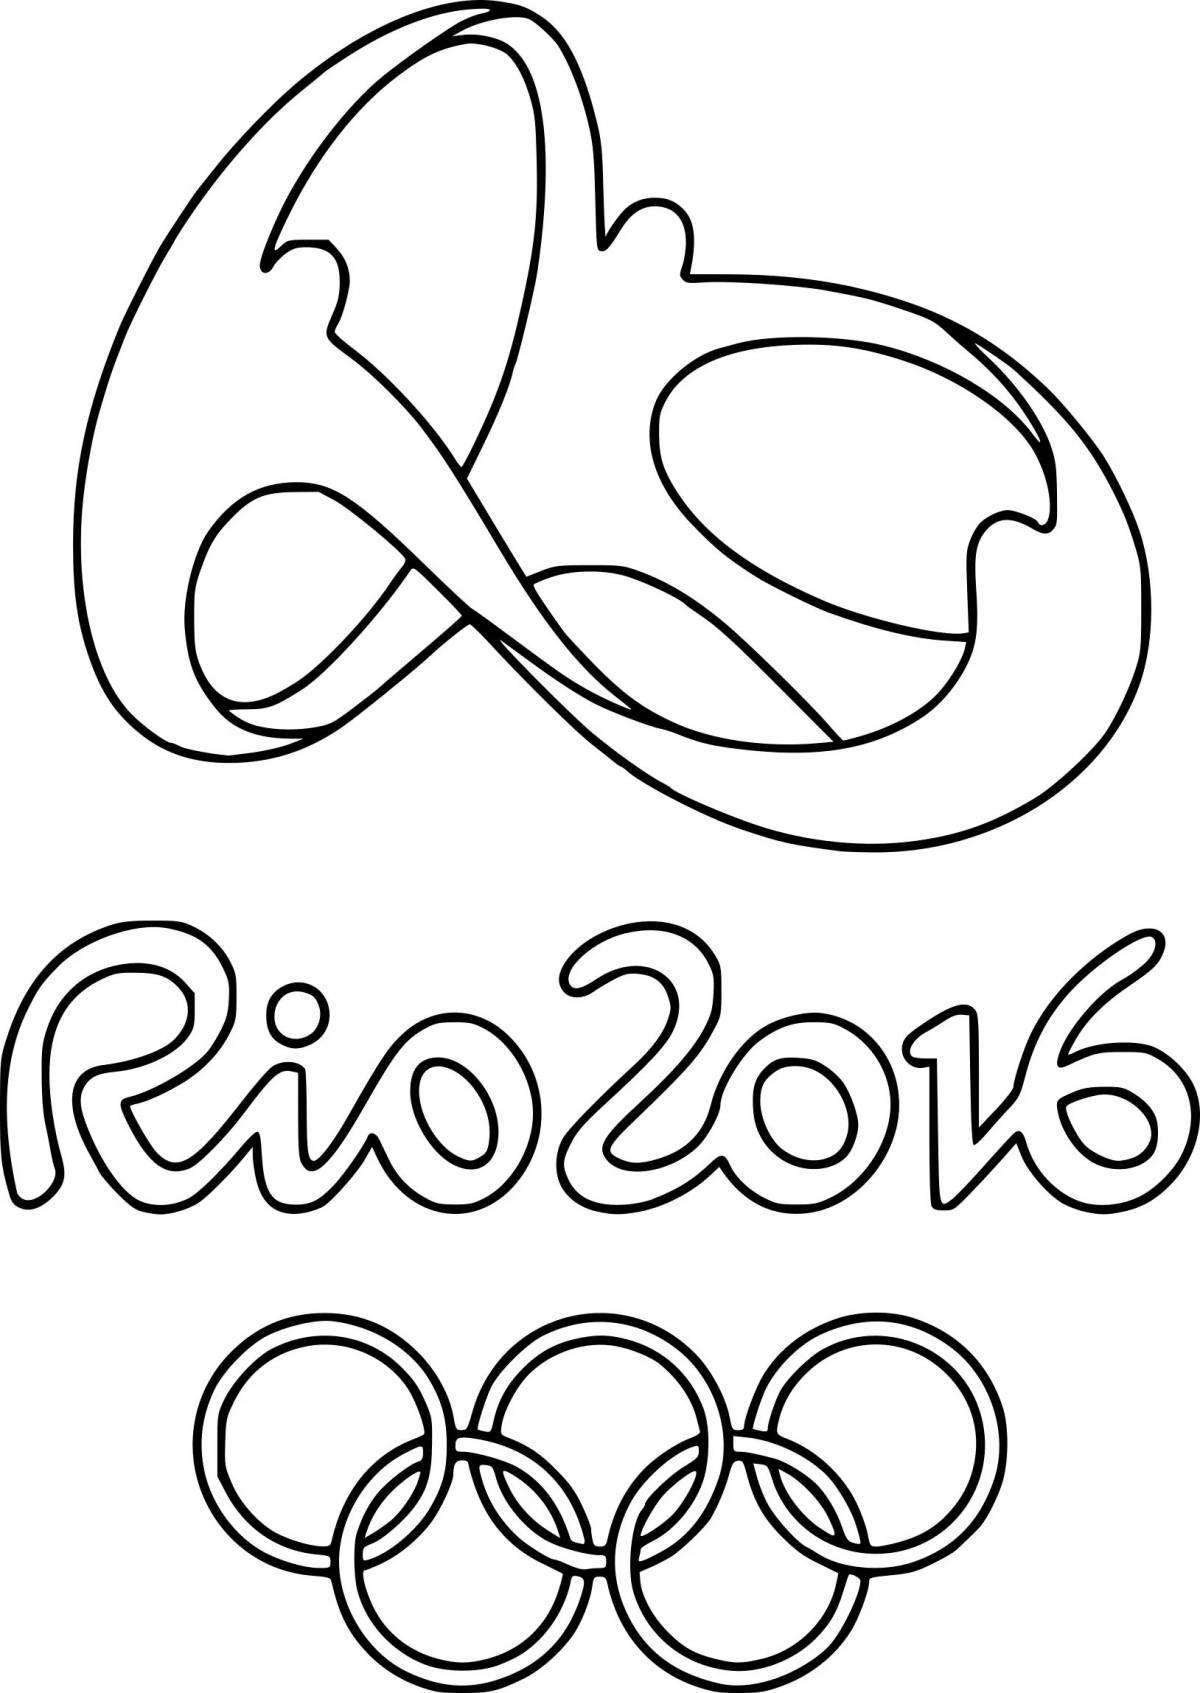 Раскраска восхитительные олимпийские кольца для печати